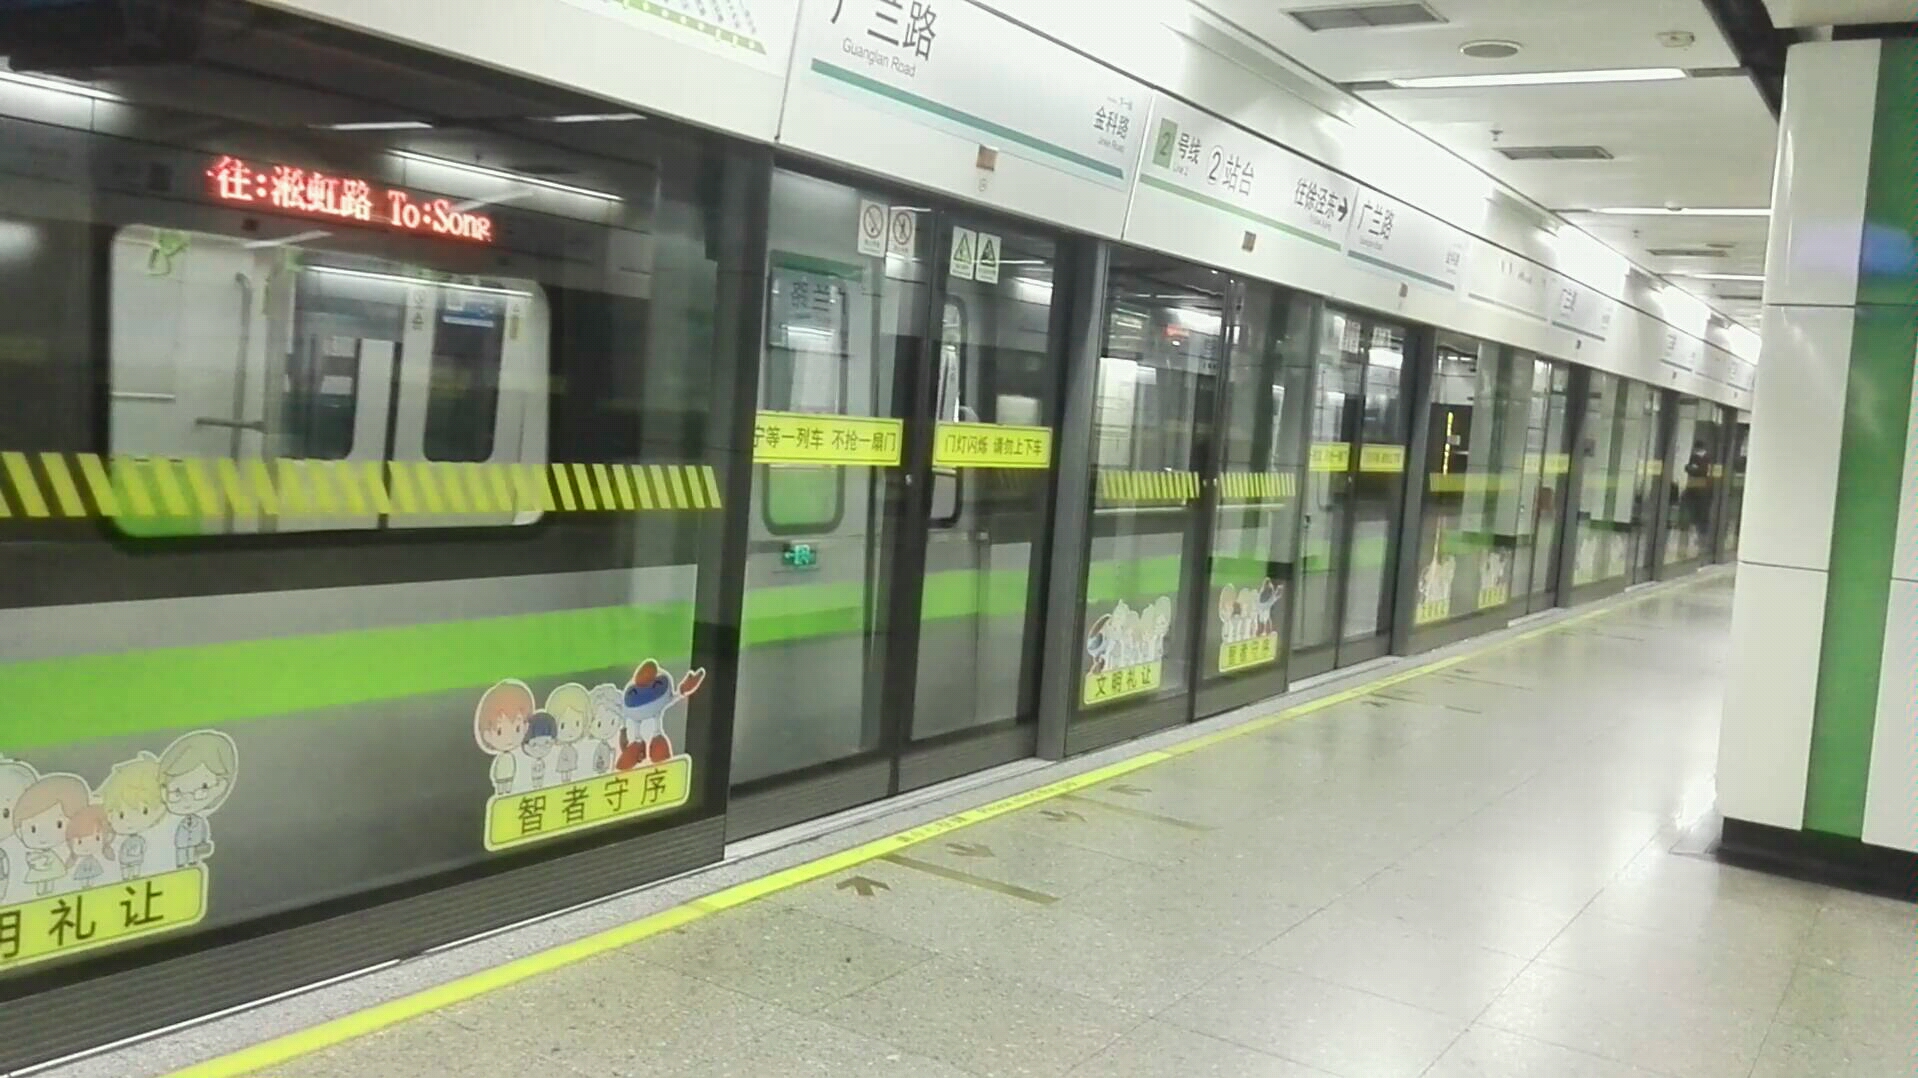 上海地铁2号线02a05绿灯侠02109广兰路折返出站(广兰路往淞虹路方向)